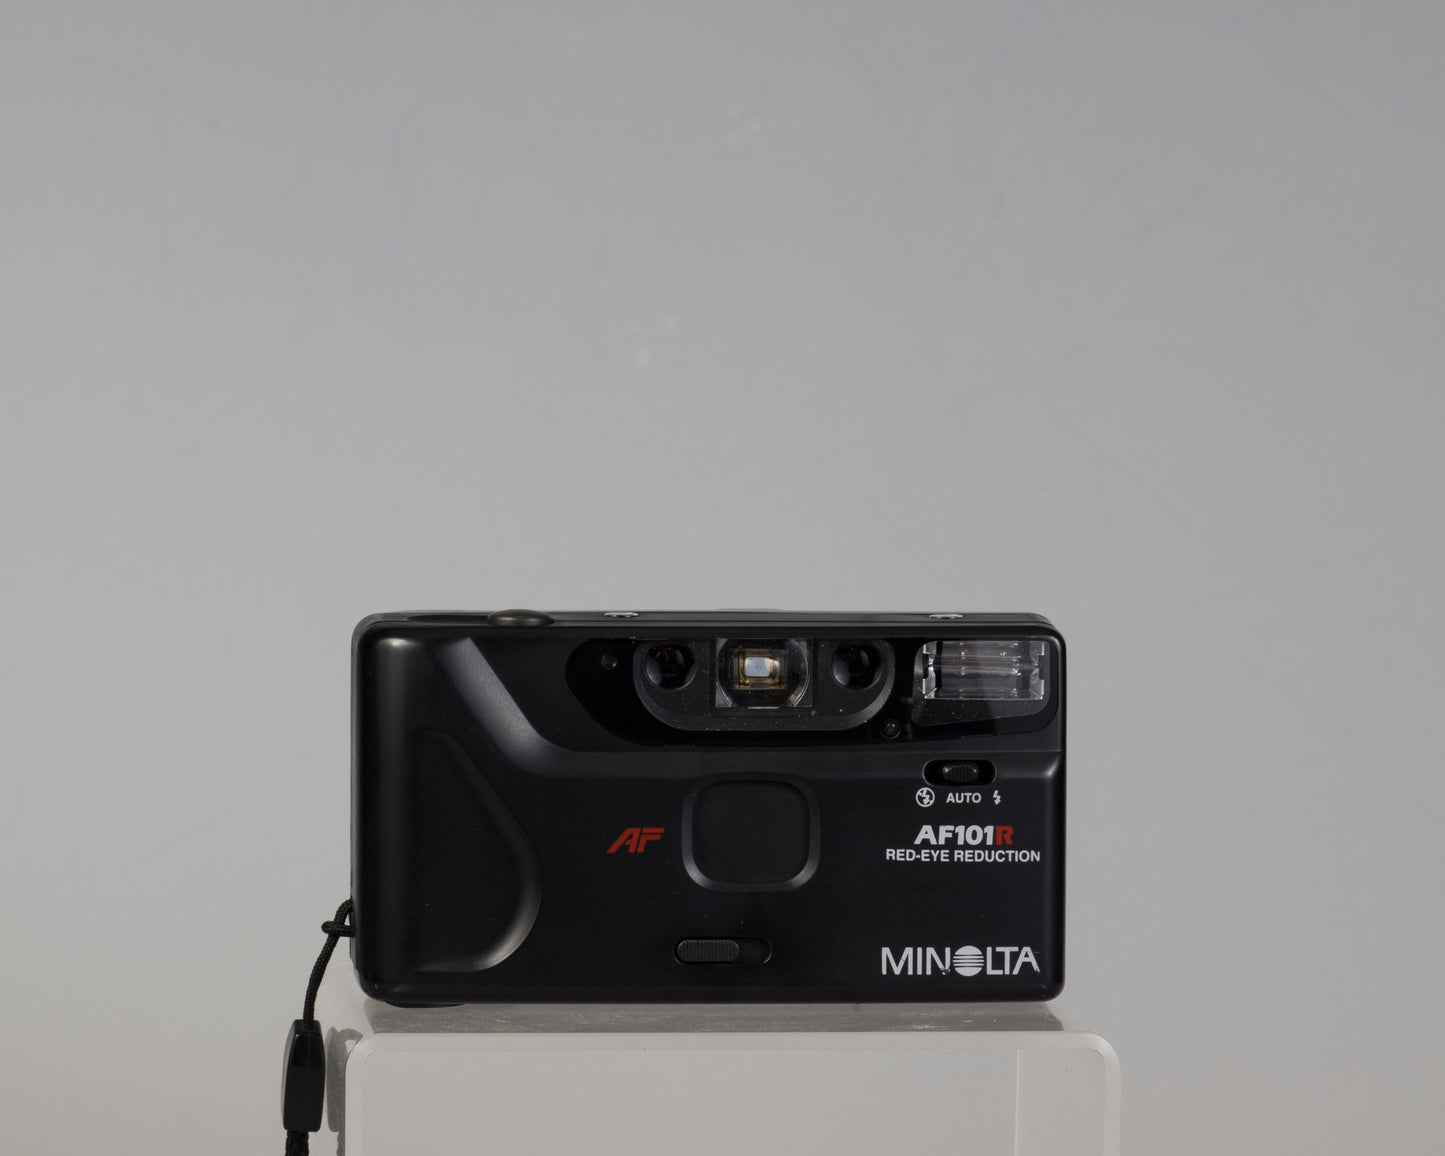 Appareil photo compact Minolta AF101r 35 mm avec étui